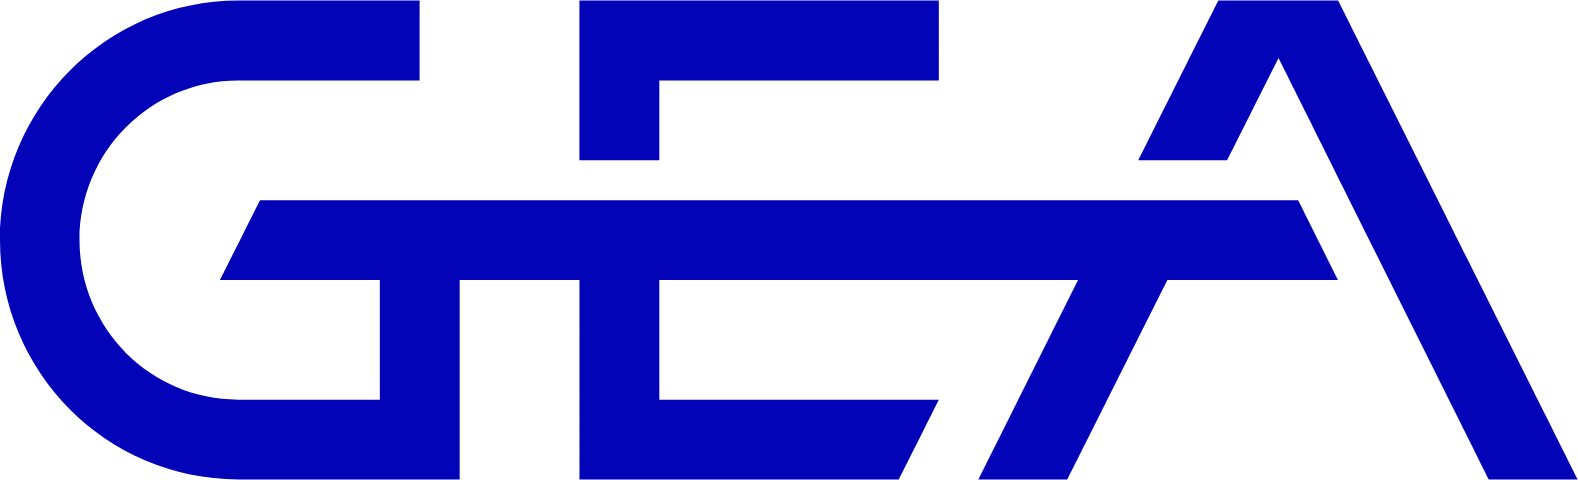 GEA Group
 logo (transparent PNG)